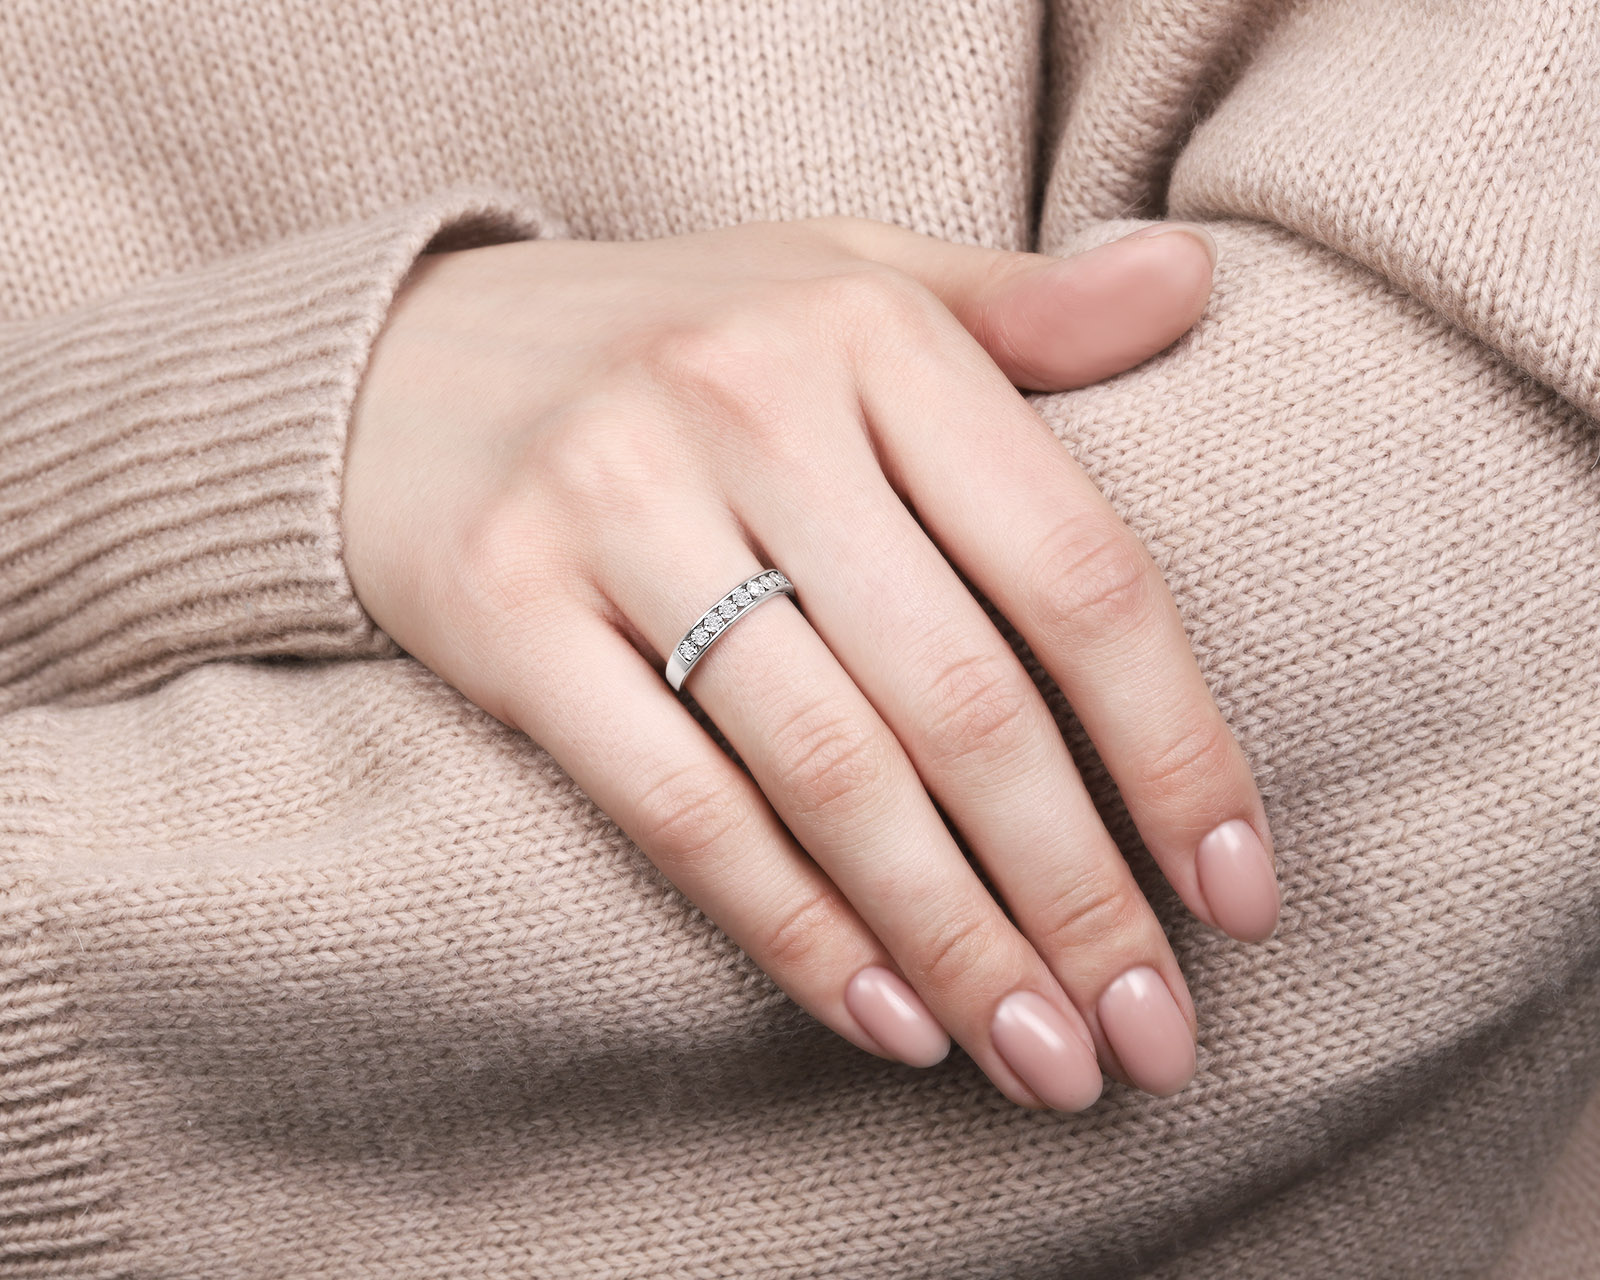 Модное золотое кольцо с бриллиантами 0.07ct